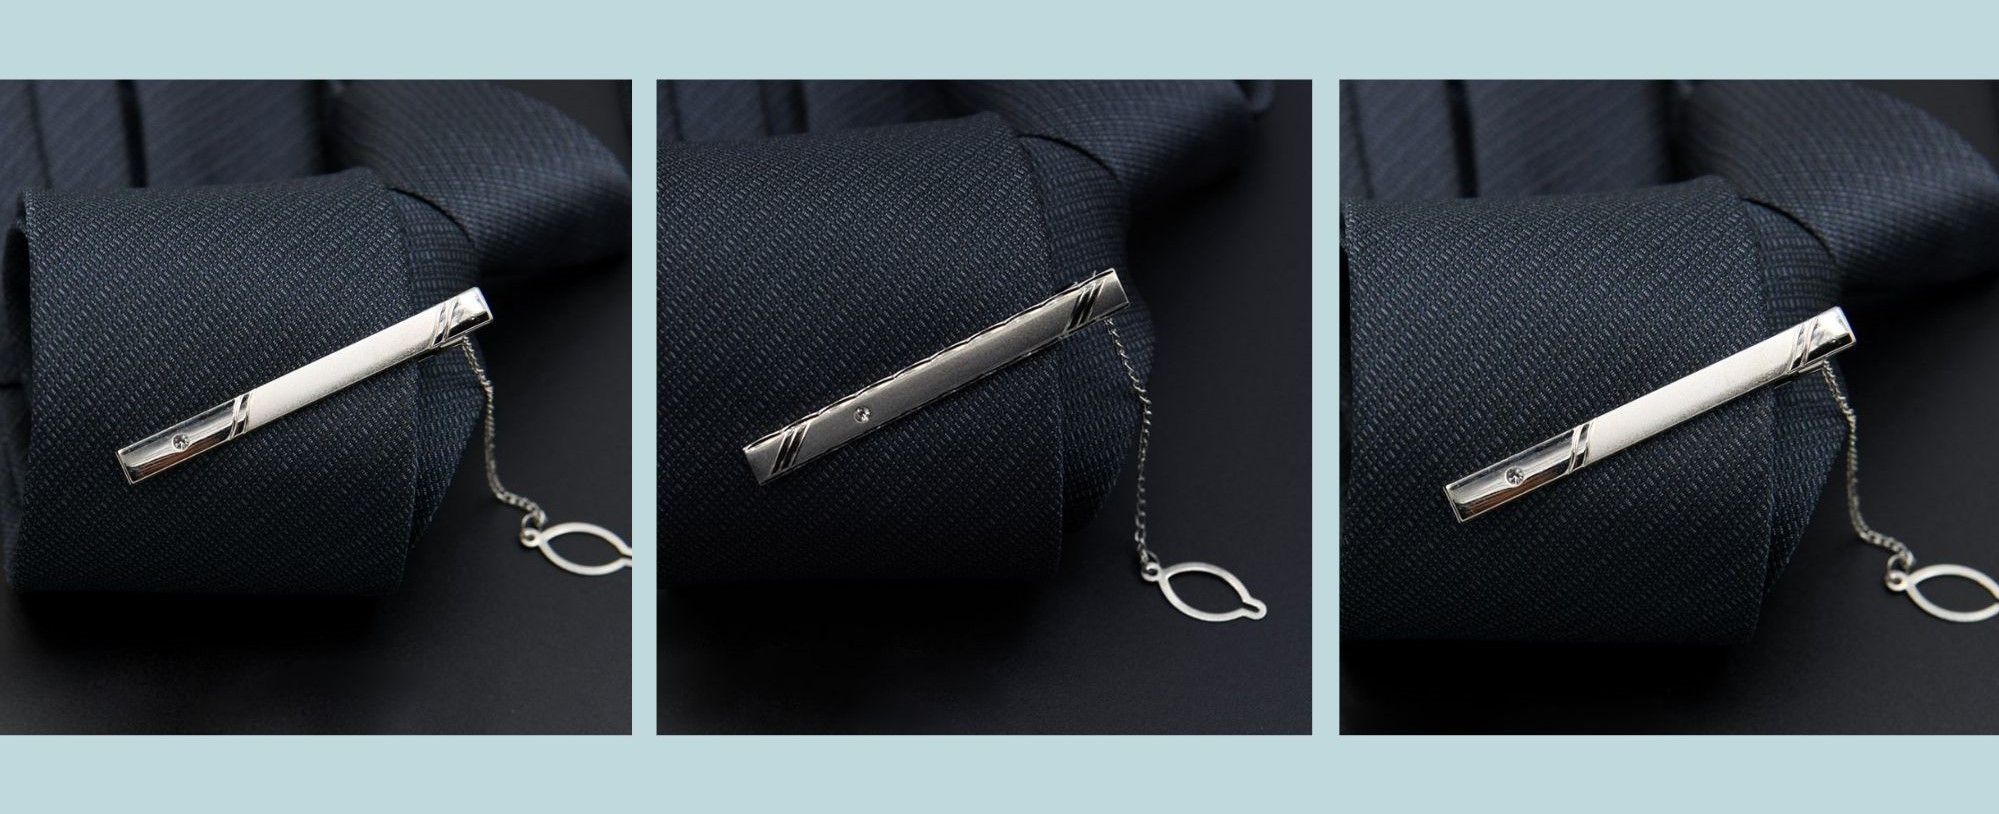 Cách đeo kẹp cà vạt có dây có gì khác với kẹp cà vạt thông thường